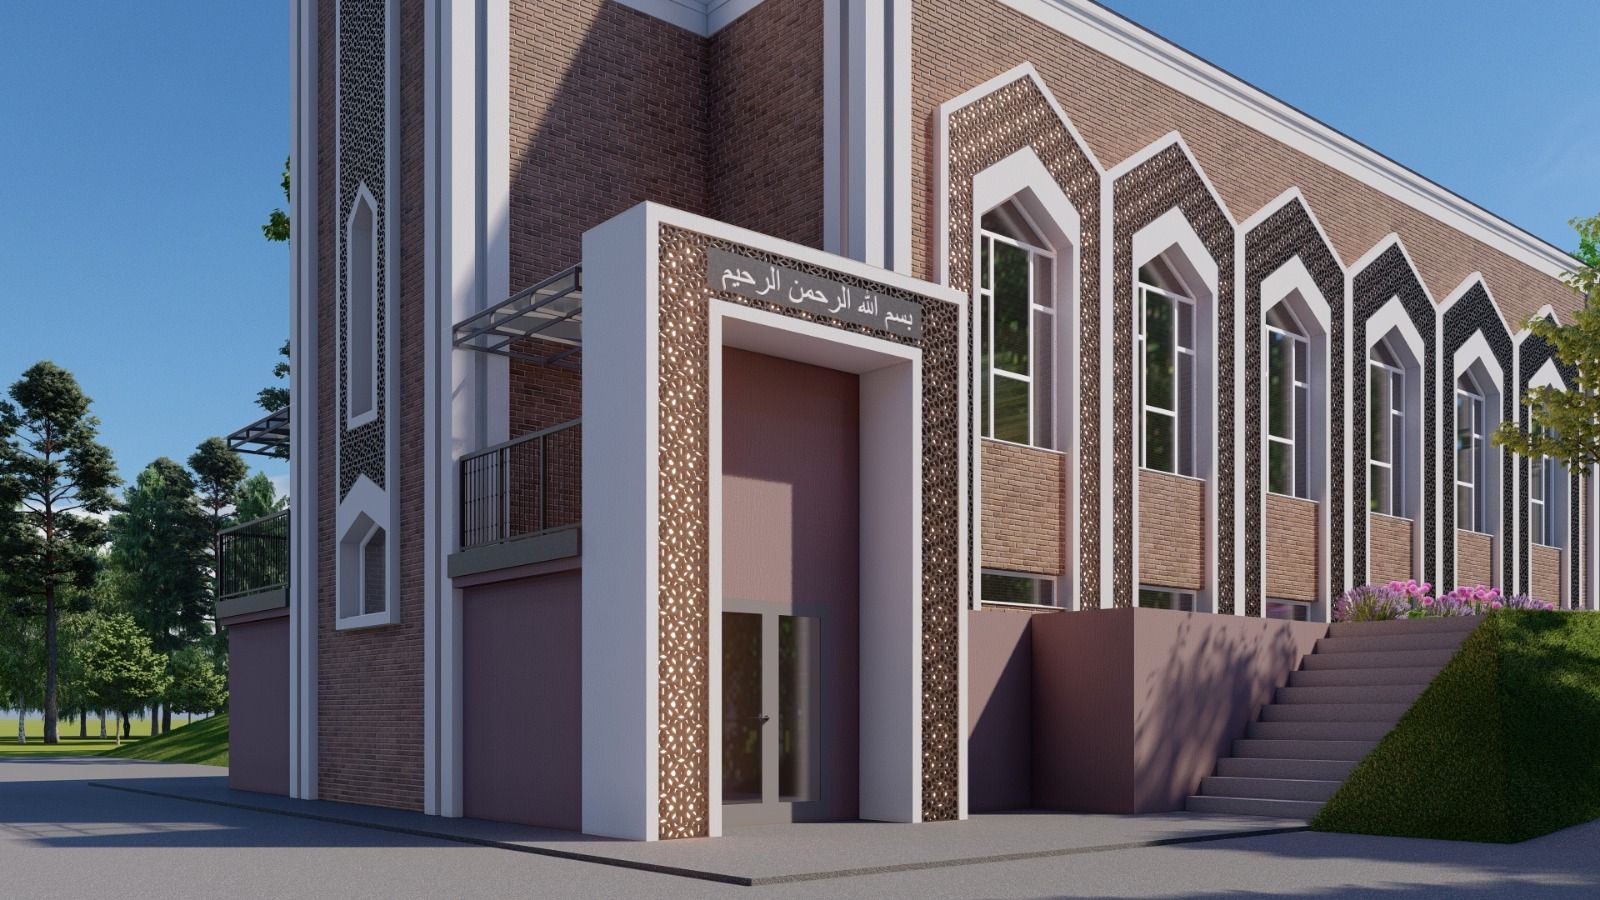 Мечеть «КамАл» - архитектурная достопримечательность Камских Полян